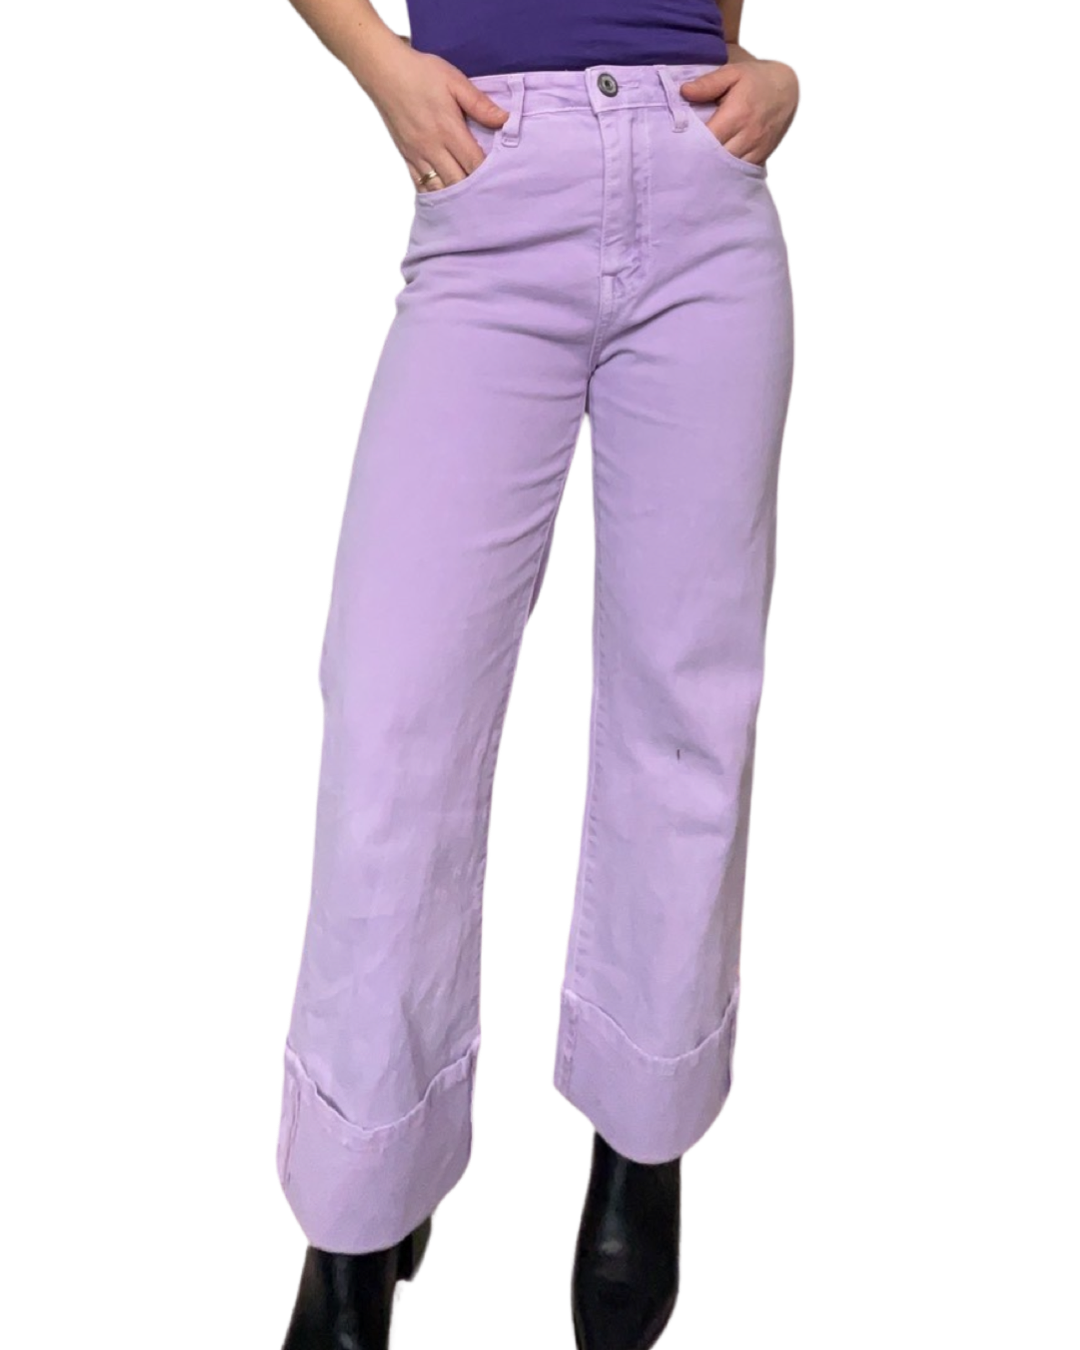 Jeans droits pour femme à taille haute lilas avec bottes noires.